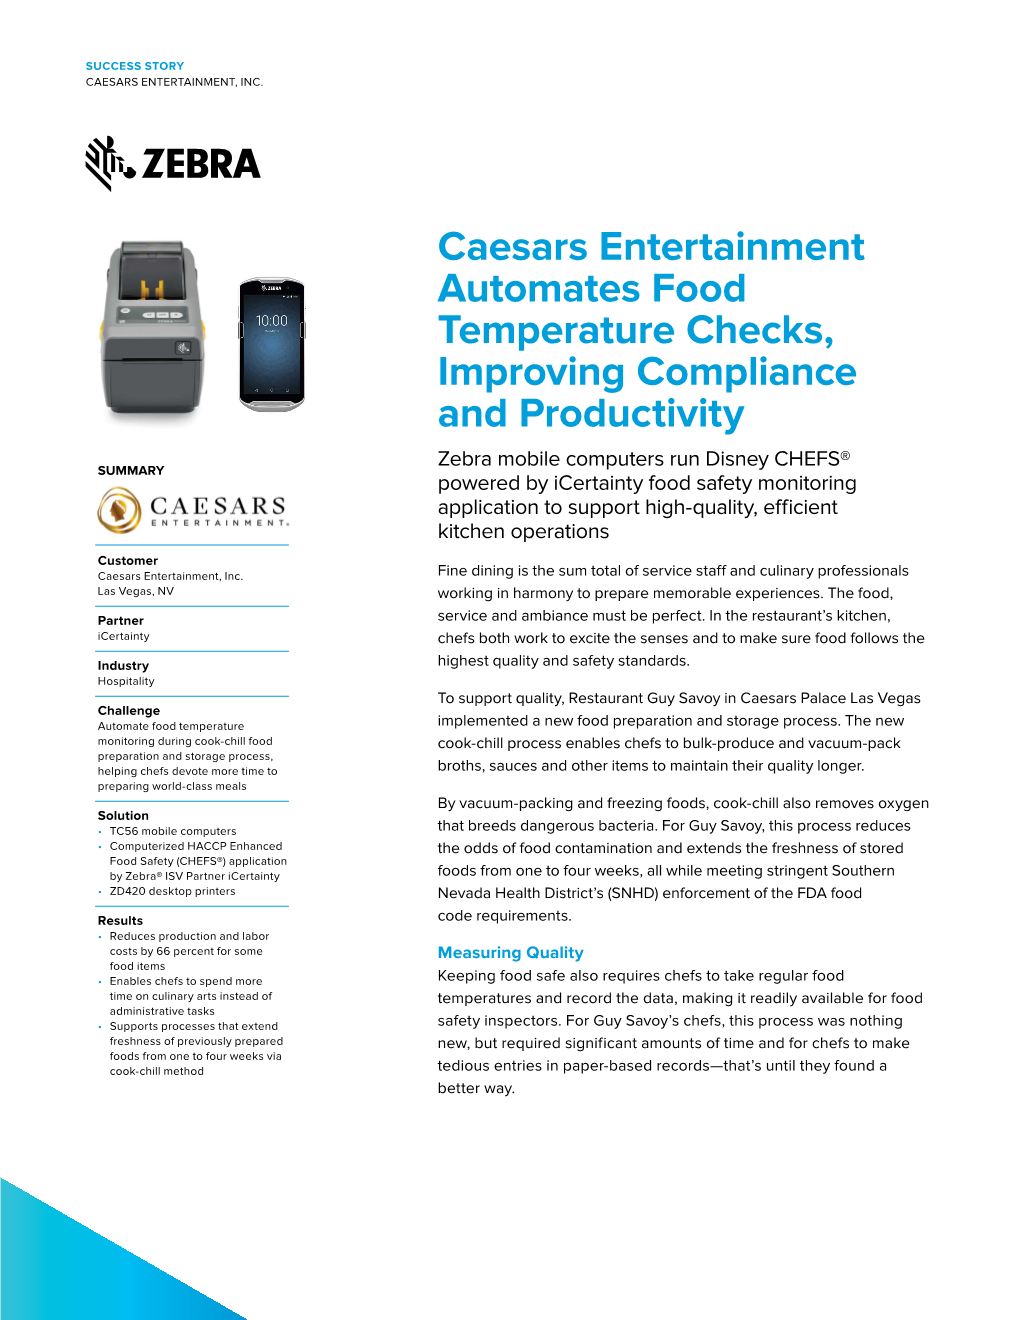 Caesars Entertainment, Inc